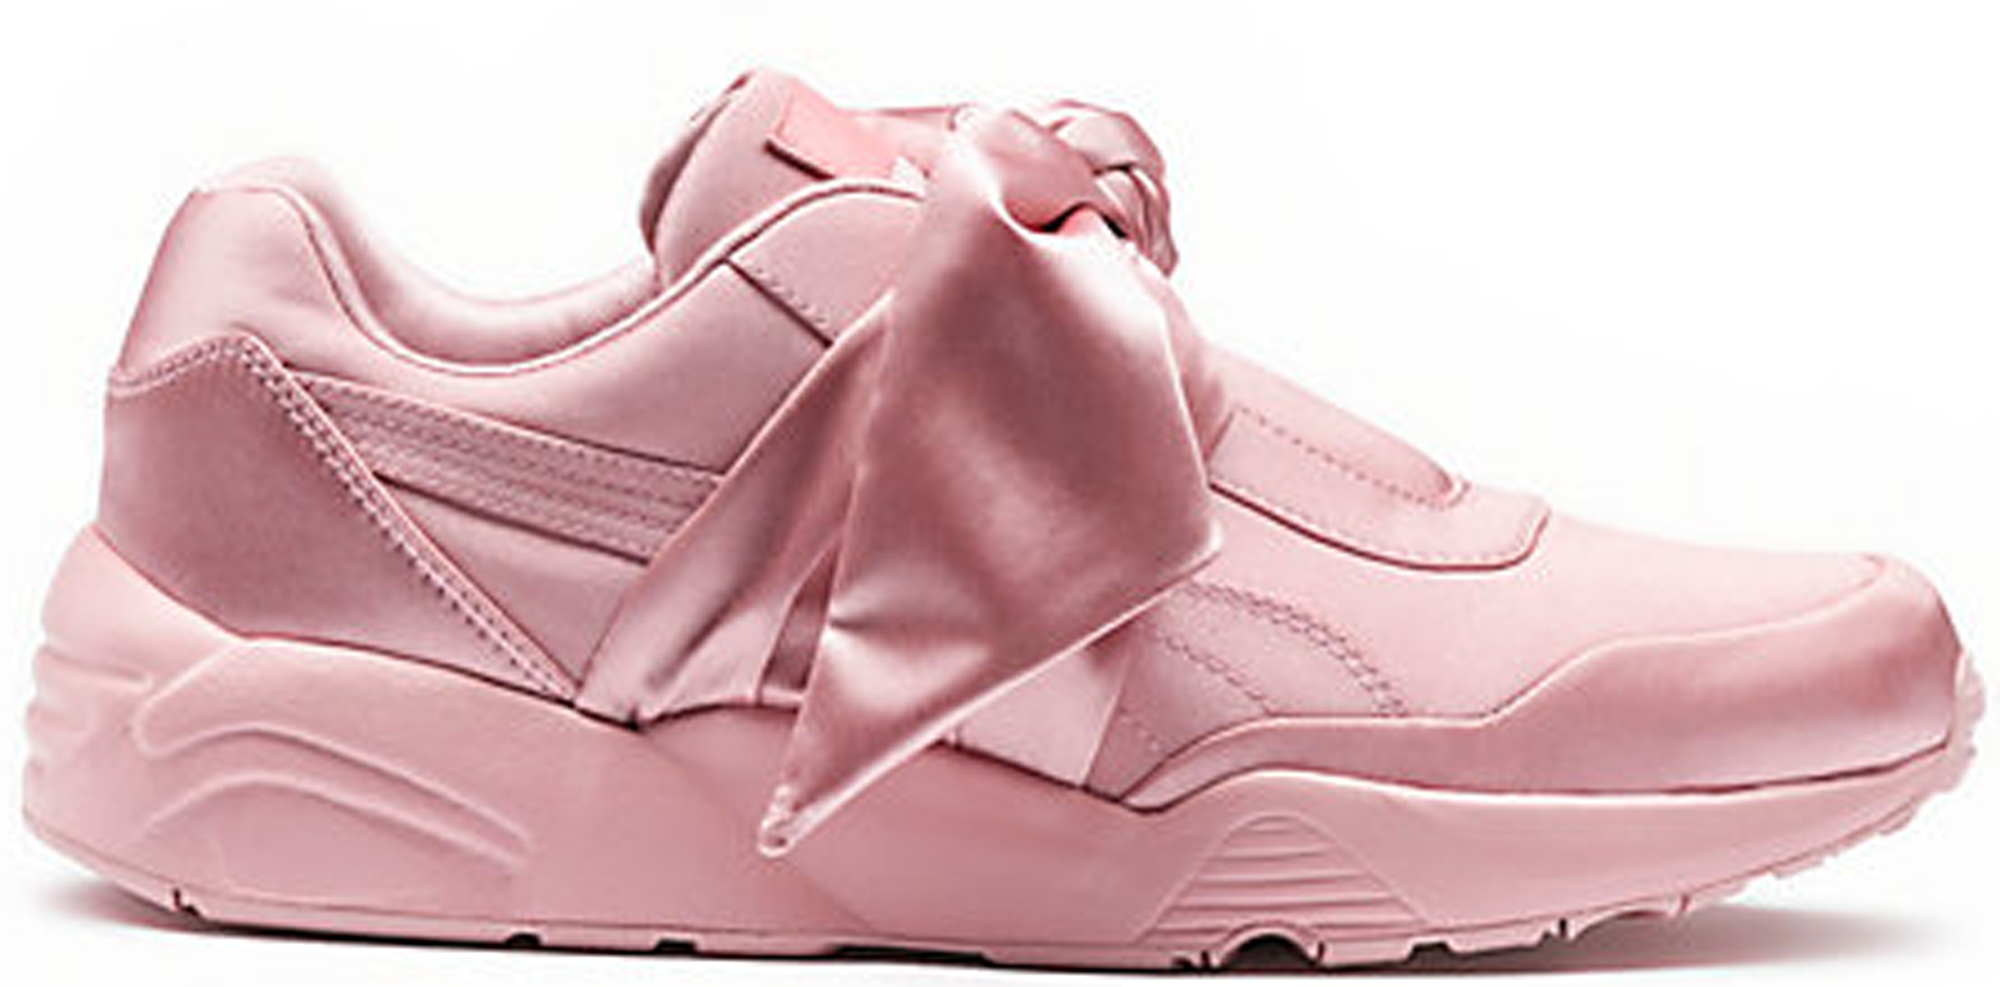 Puma Bow Rihanna Fenty Pink (W) - 365054-01